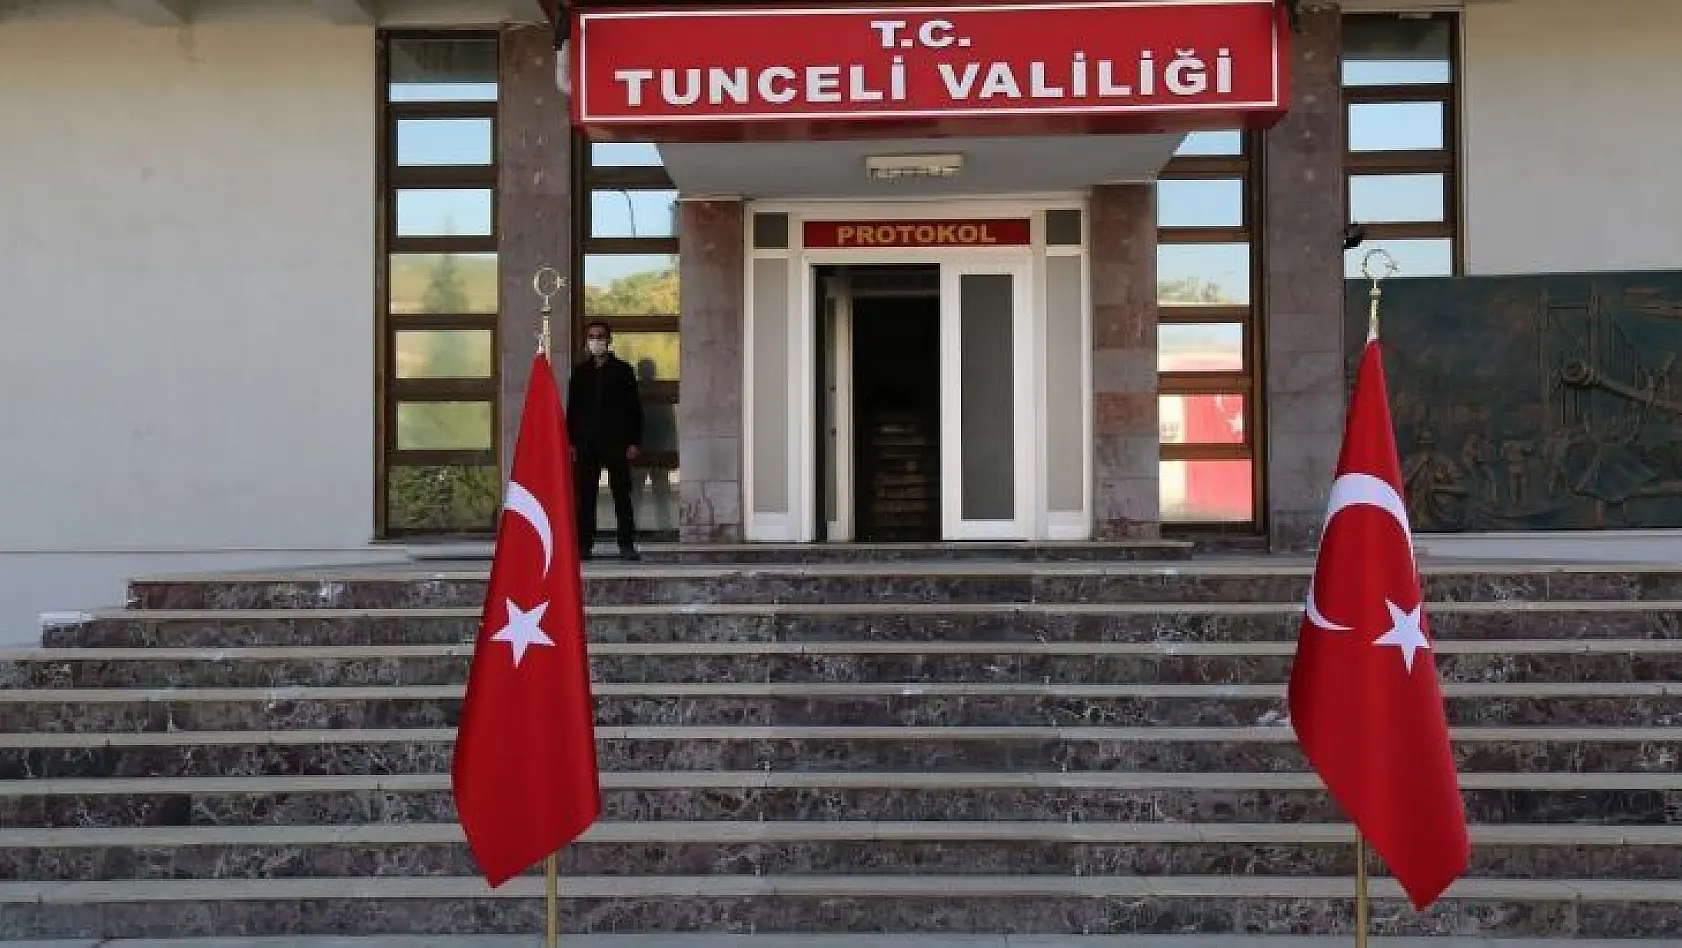 Tunceli'de il dışından gelenlere 10 gün evde kalma çağrısı